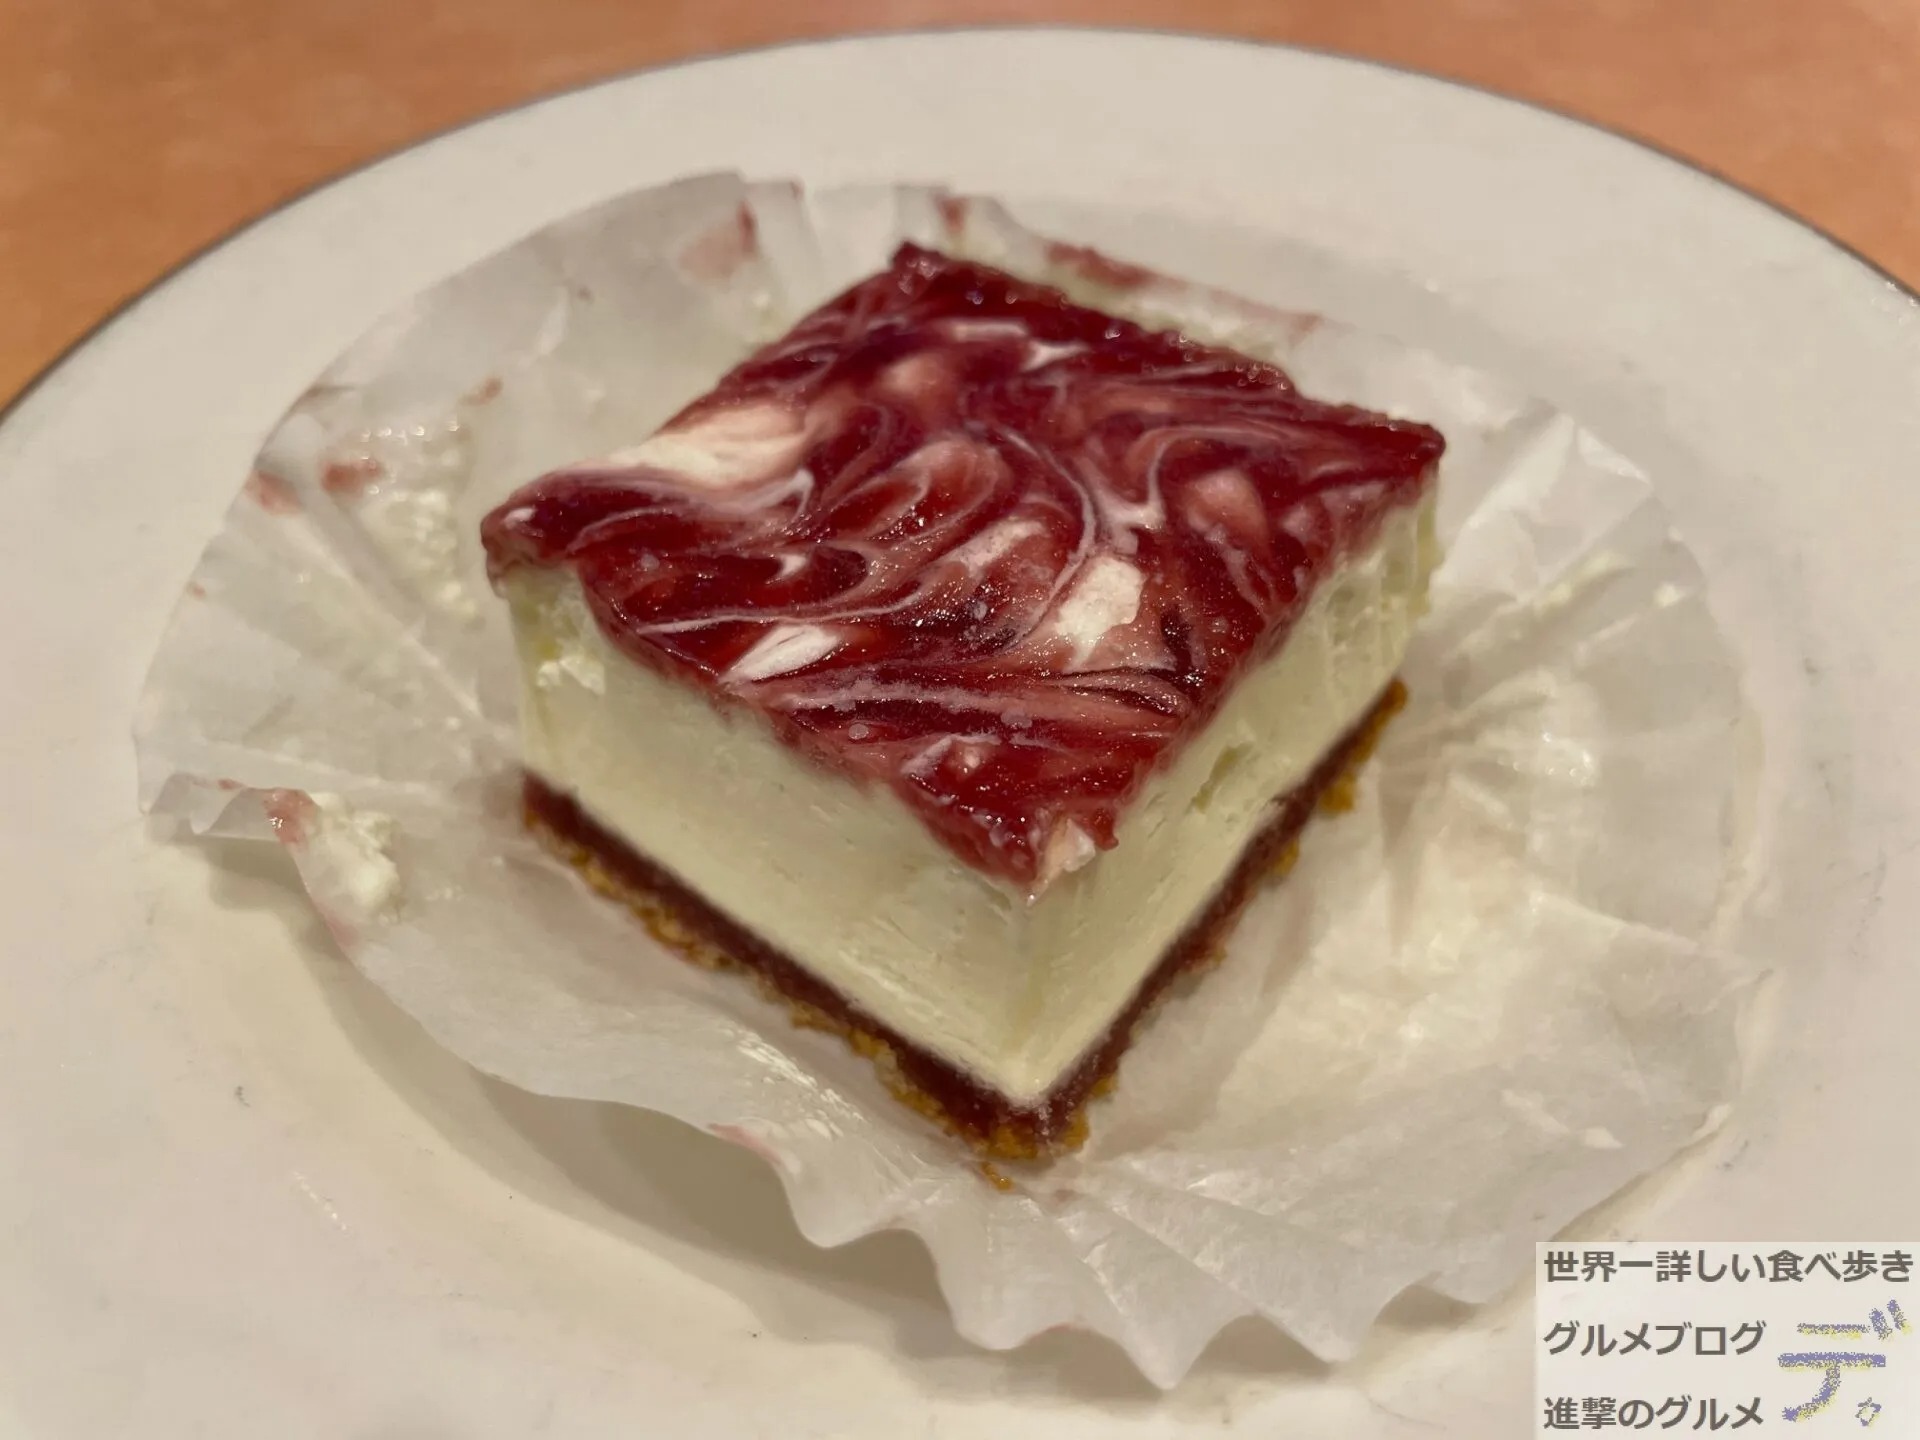 サイゼリヤの0円アイスケーキ アマレーナ を実食レポ 進撃のグルメ Yahoo Japan クリエイターズプログラム